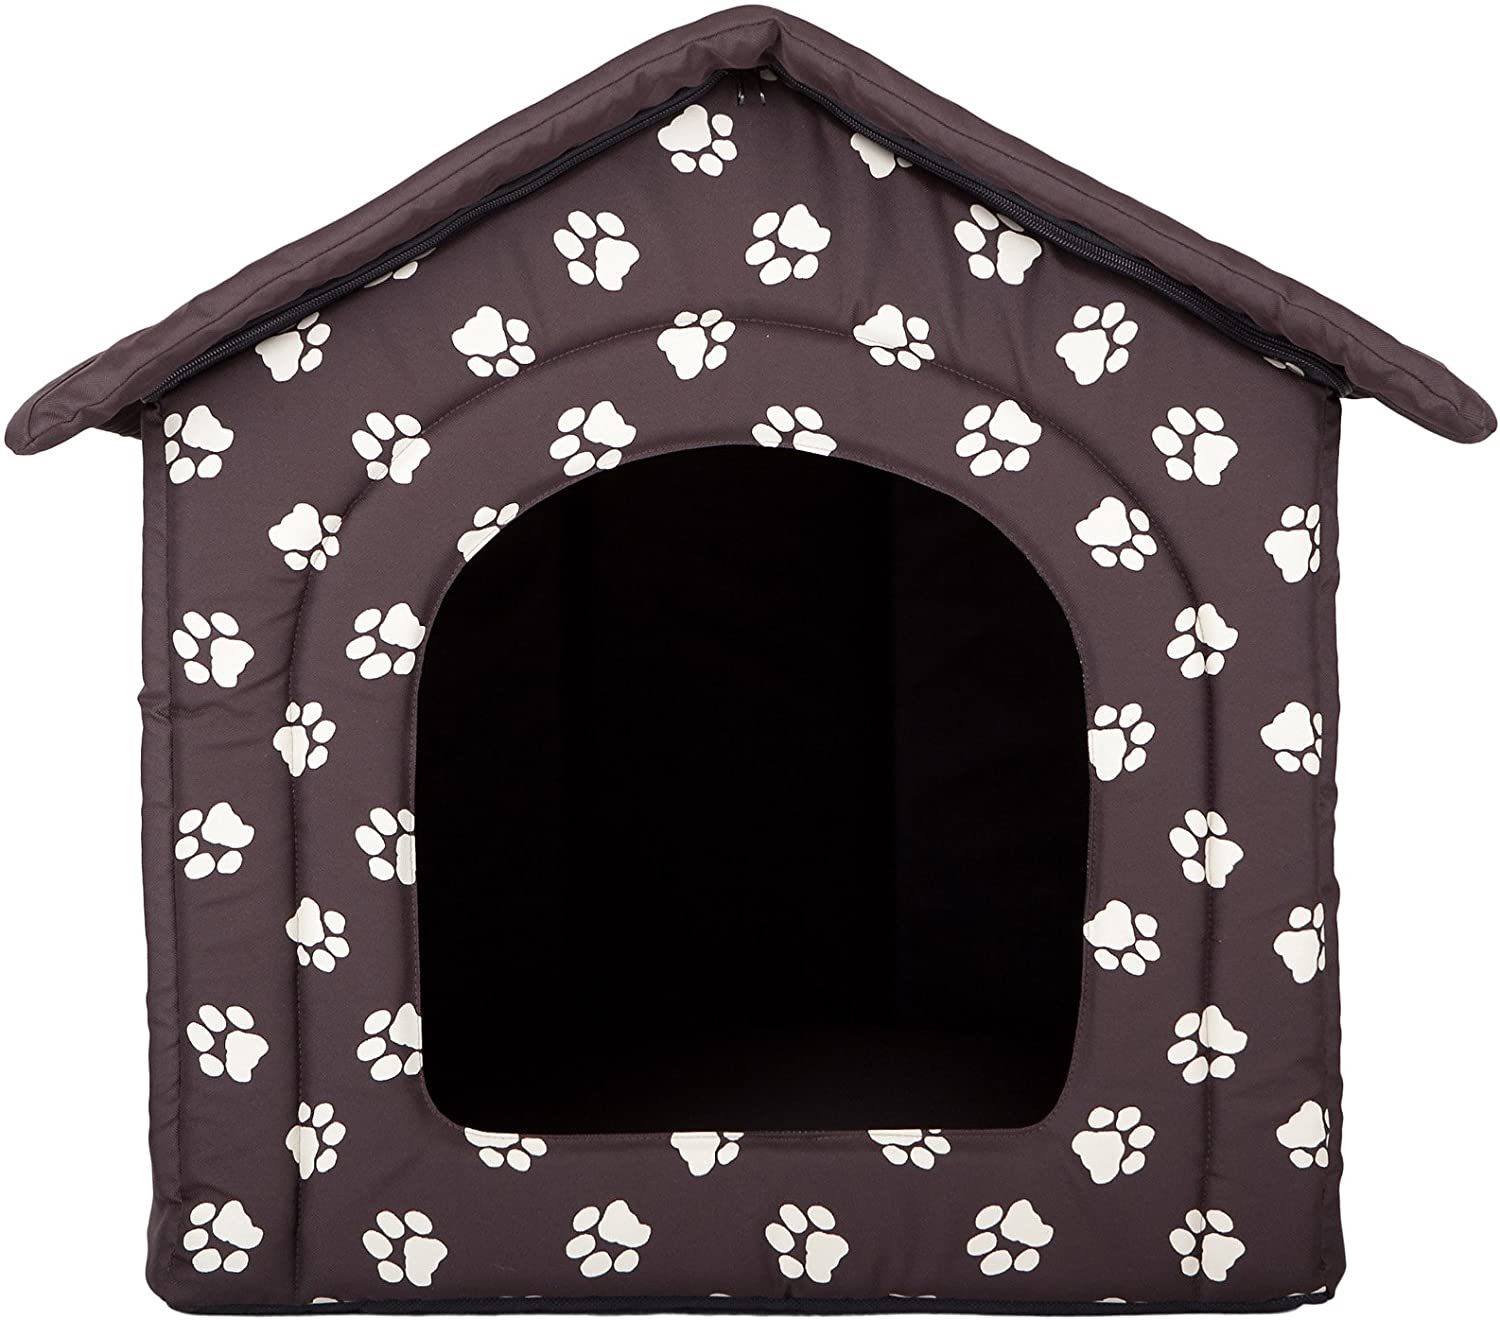  Hobbydog - Casa para Perro, tamaño 4, Color marrón con Patas 